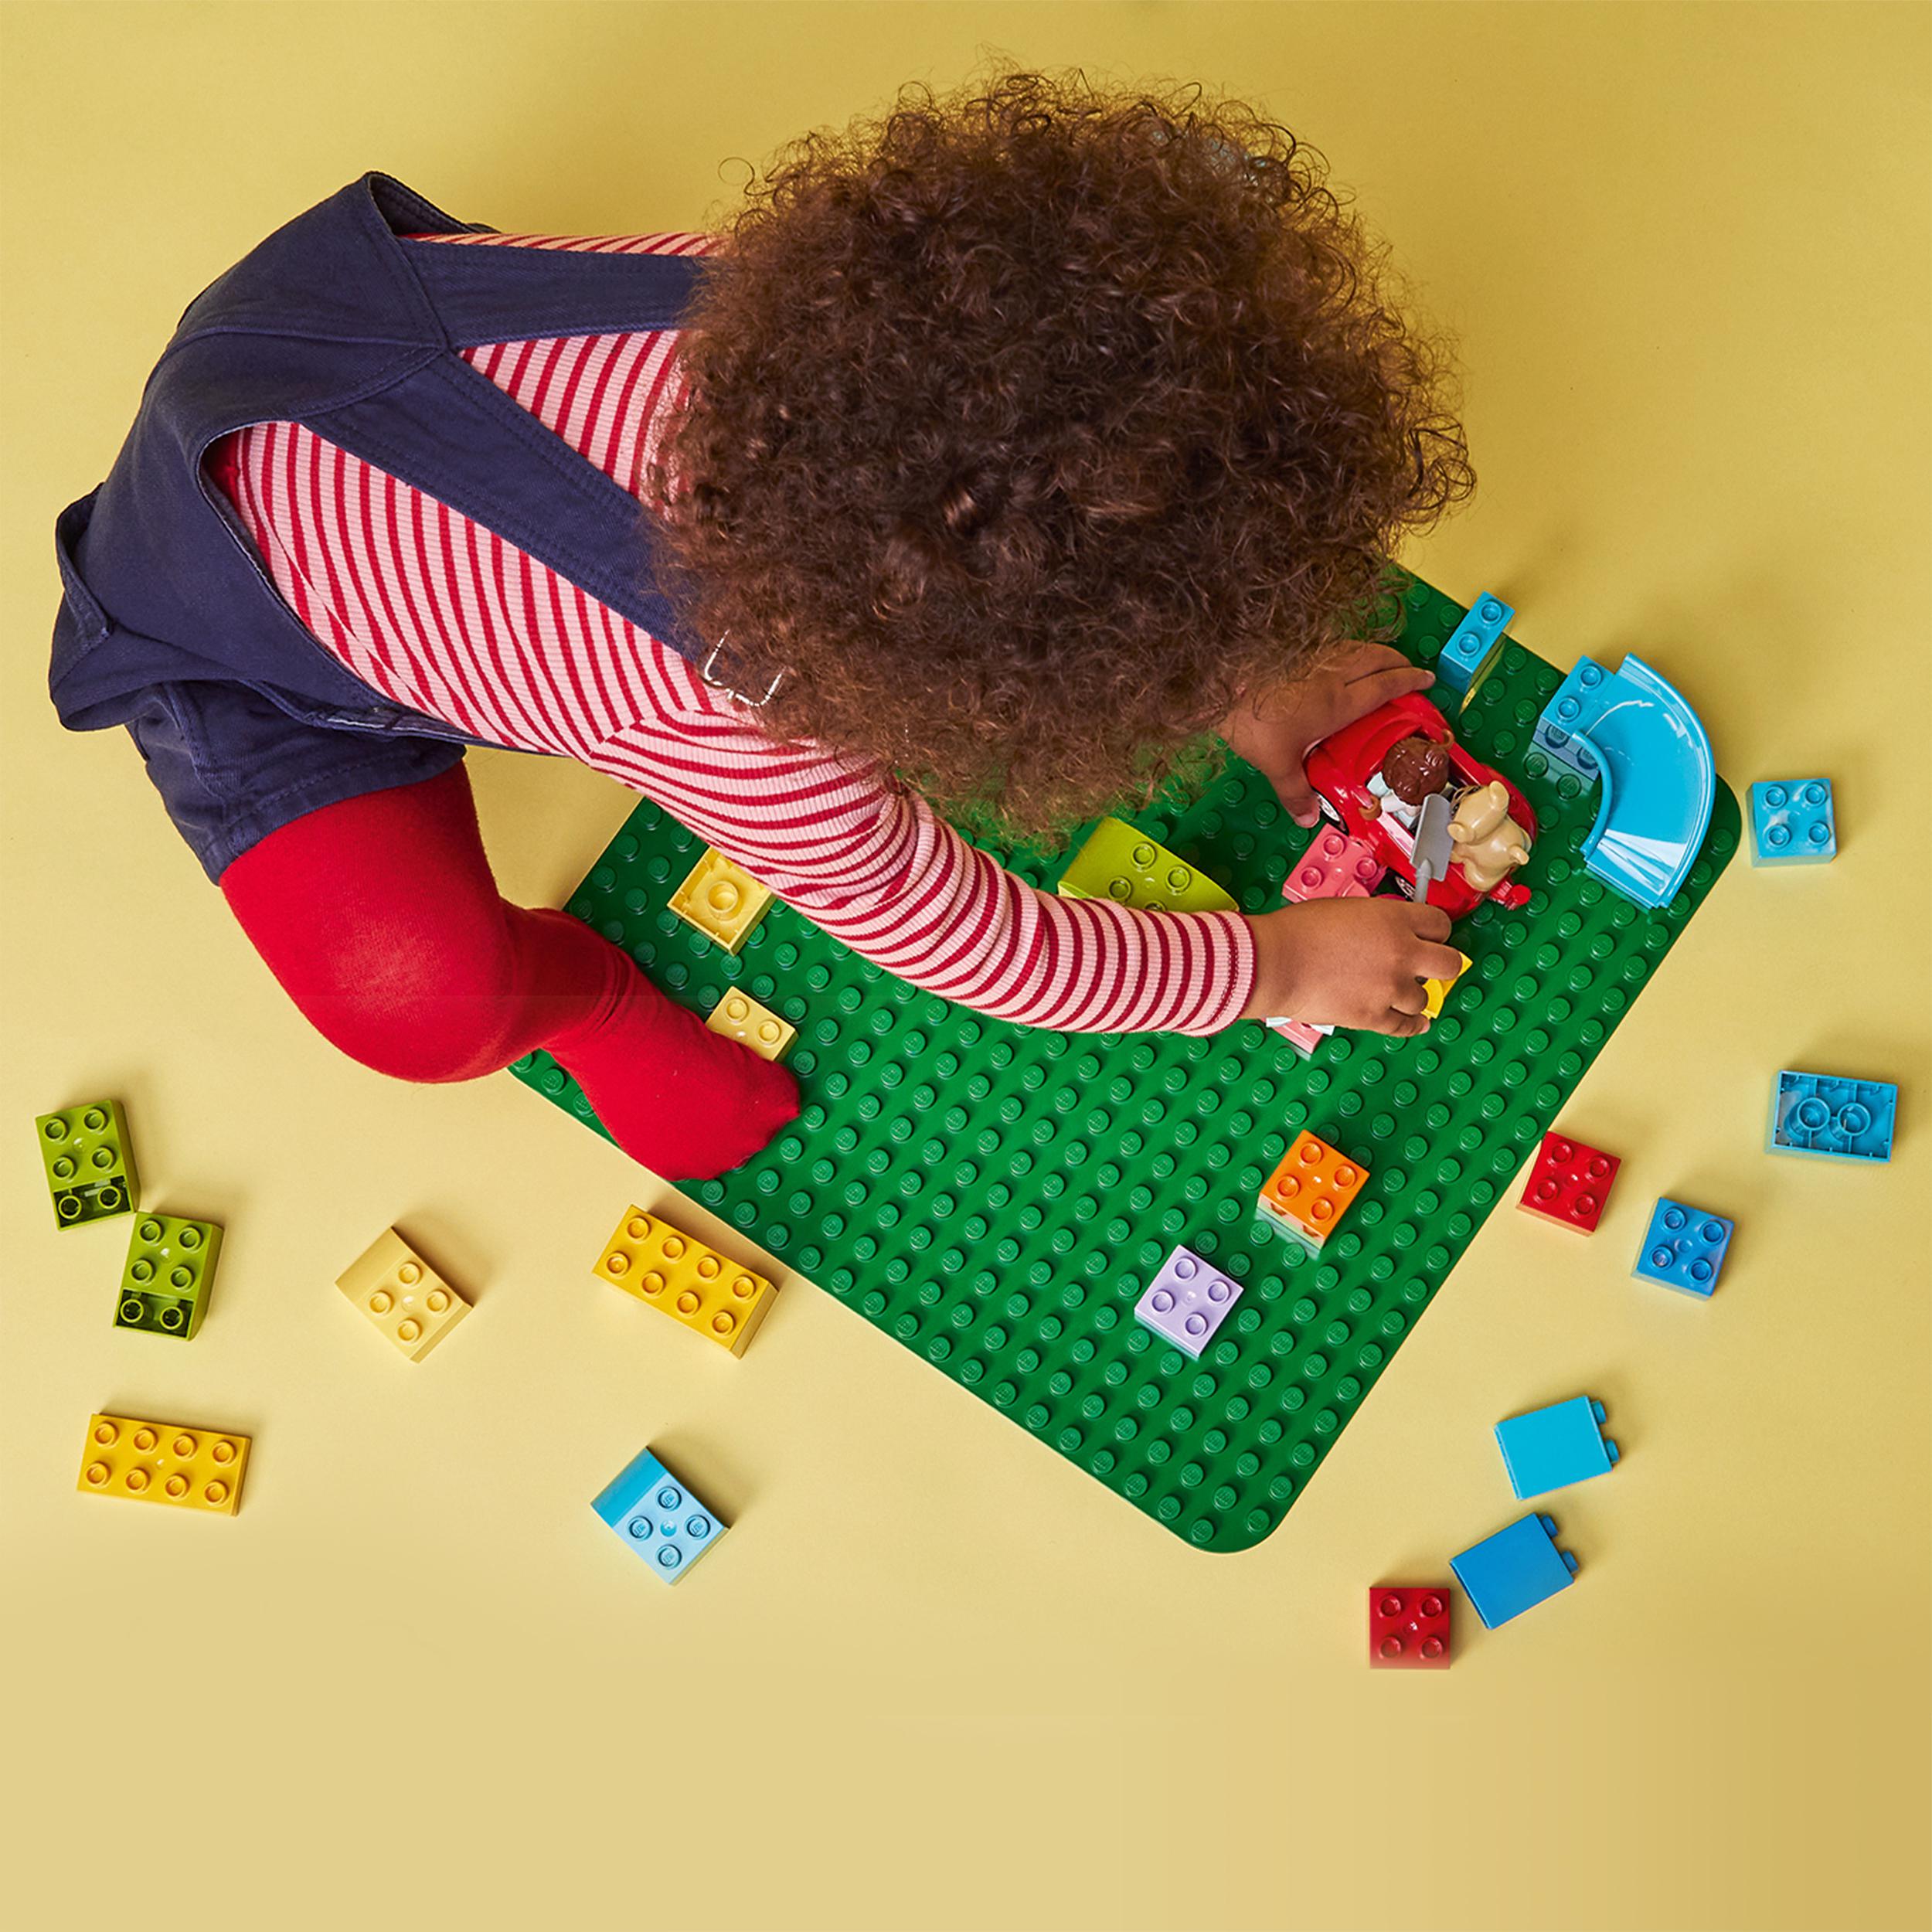 Lego duplo 10980 base verde, tavola classica per mattoncini, piattaforma giocattolo, superfice di costruzione per bambini - LEGO DUPLO, Lego